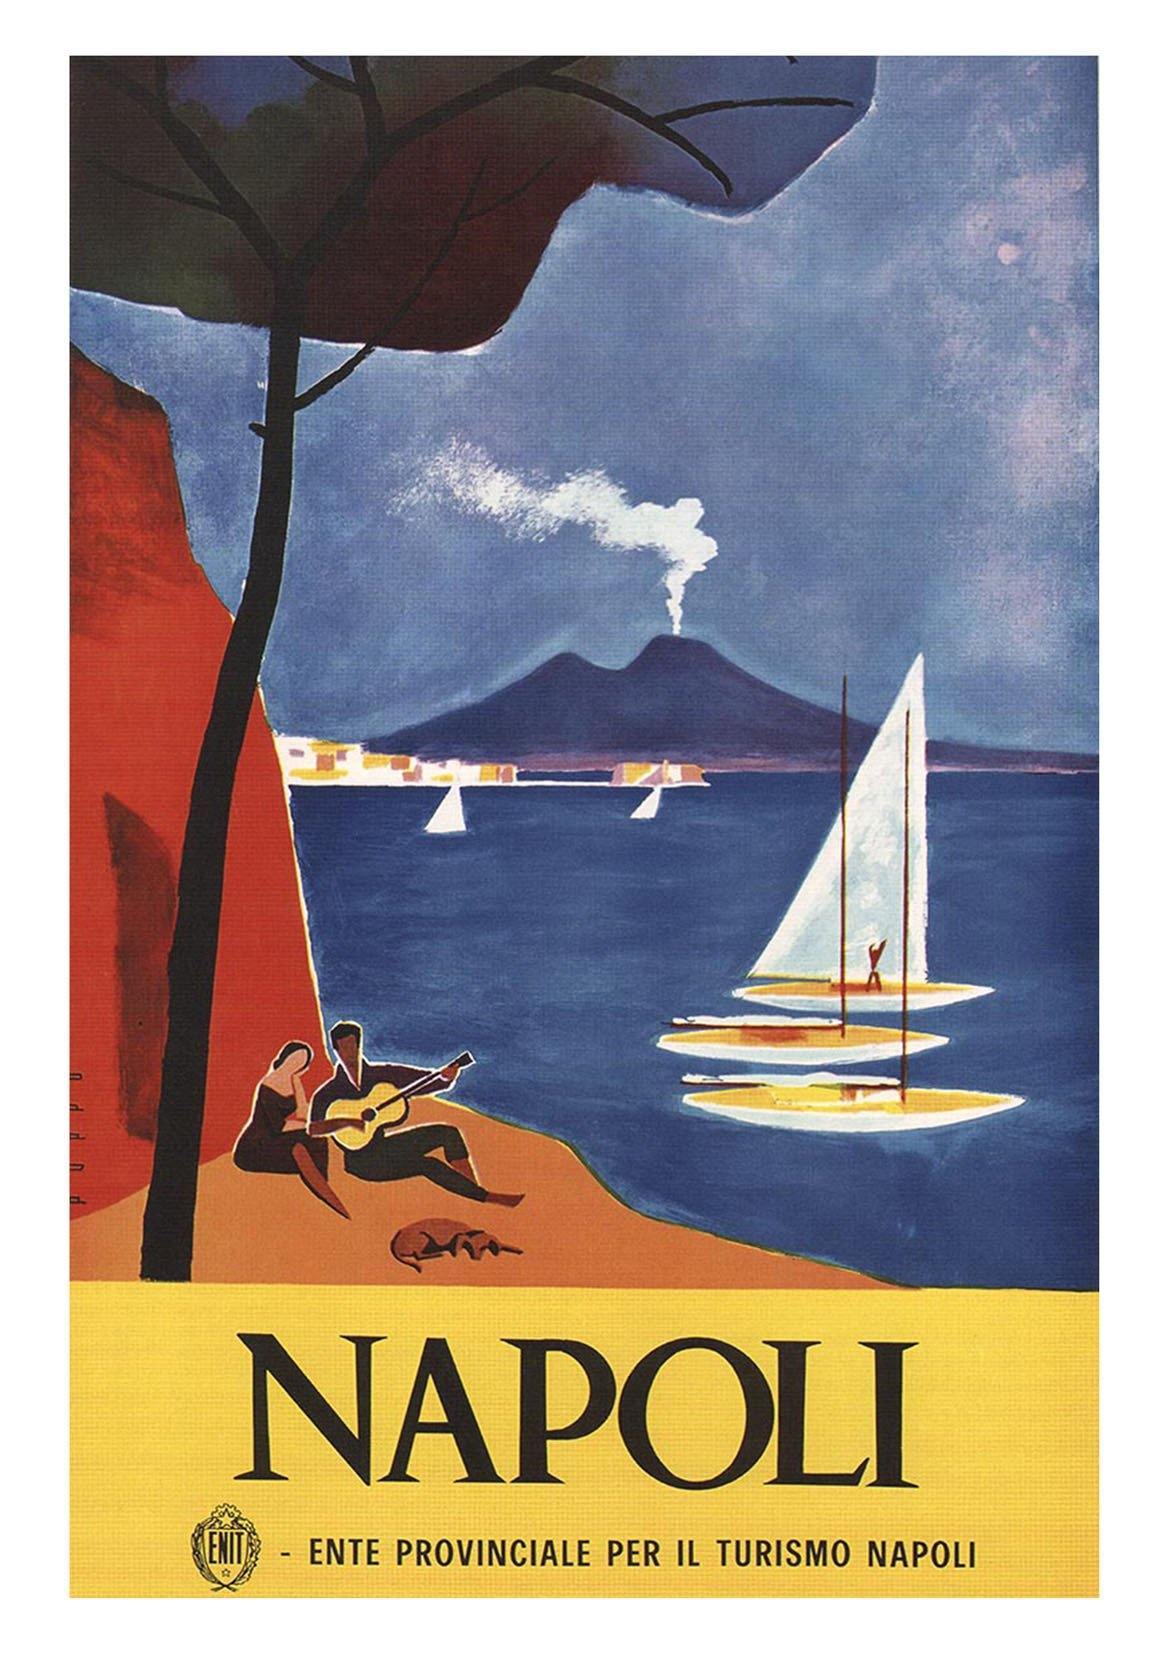 NAPLES TRAVEL POSTER: Vintage Italian Tourism Print - Pimlico Prints